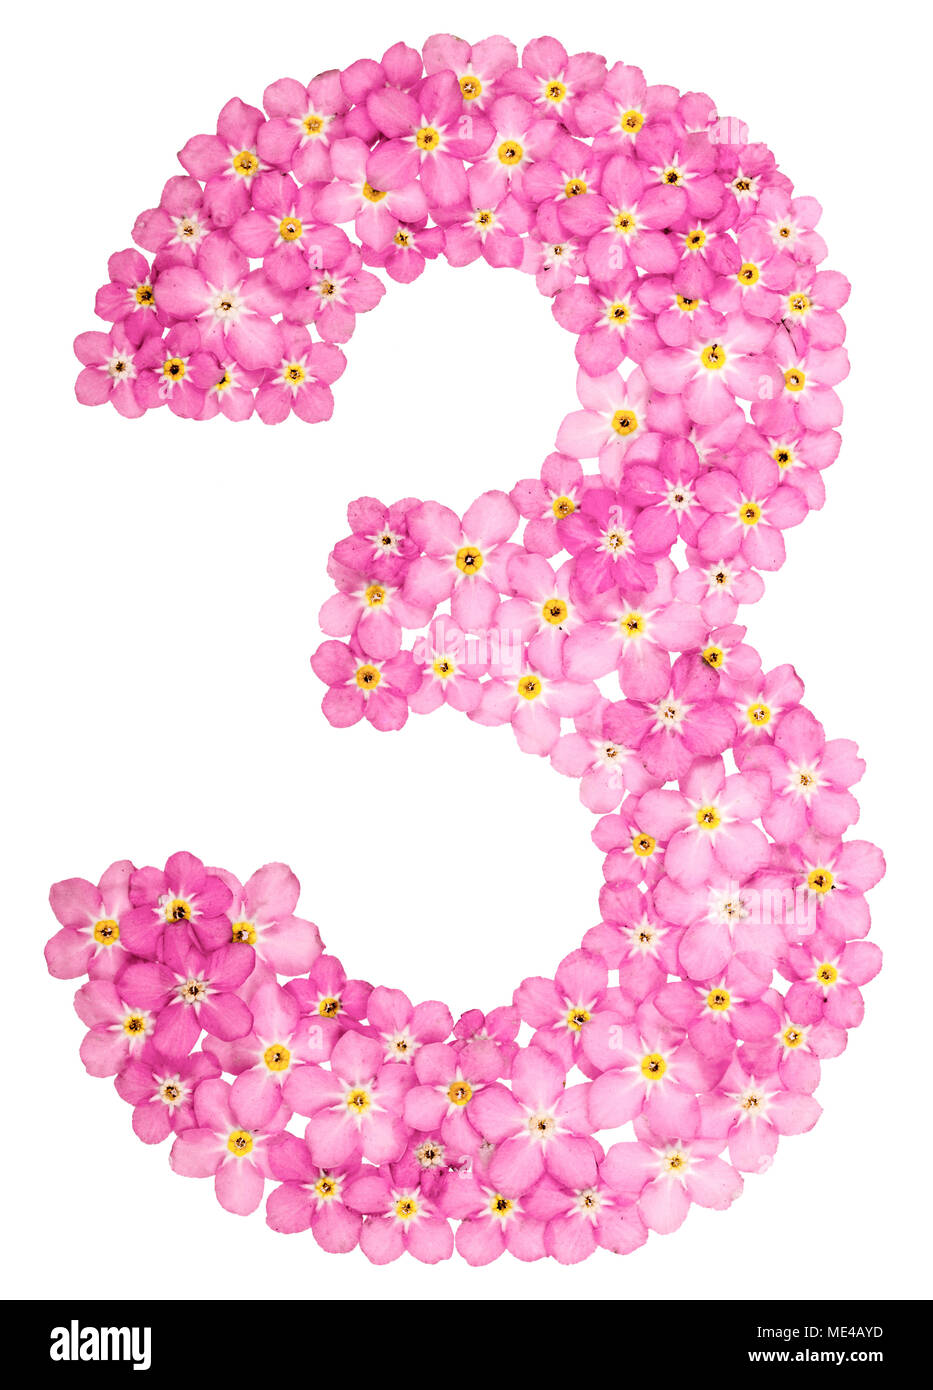 Arabische Zahl 3, Drei, von rosa Vergissmeinnicht Blumen, auf weißem  Hintergrund Stockfotografie - Alamy